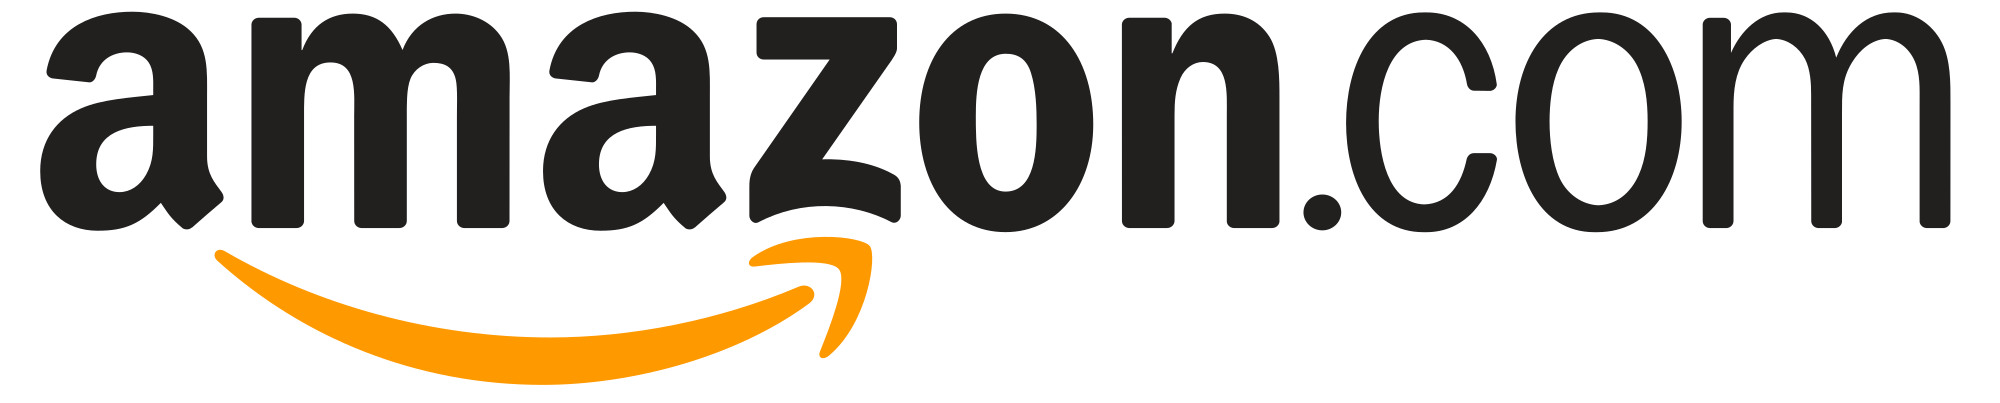 Amazon.fr Logo - Amazon.com Logo.svg